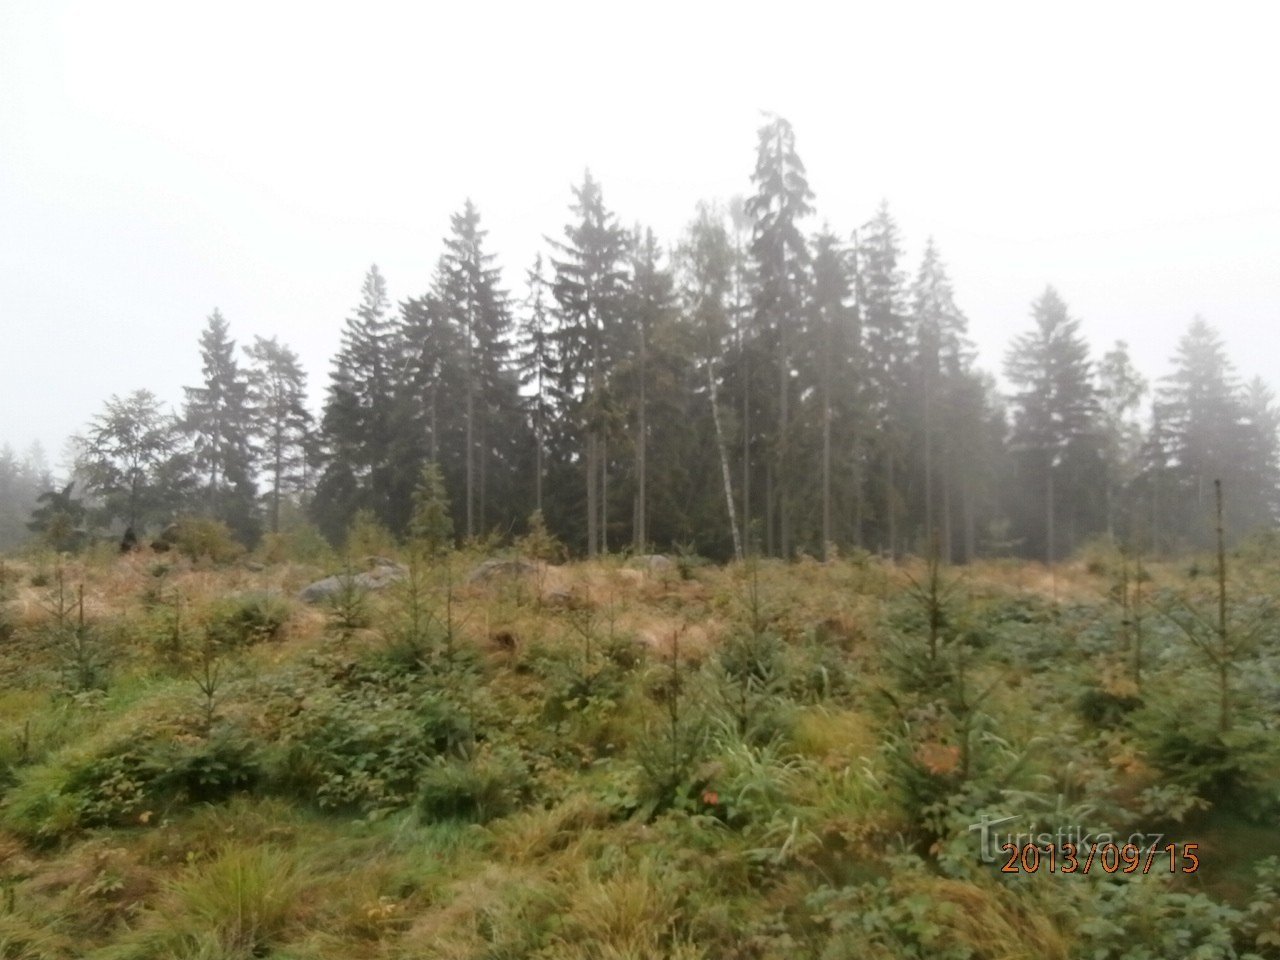 μια βόλτα στα δάση Tanvald